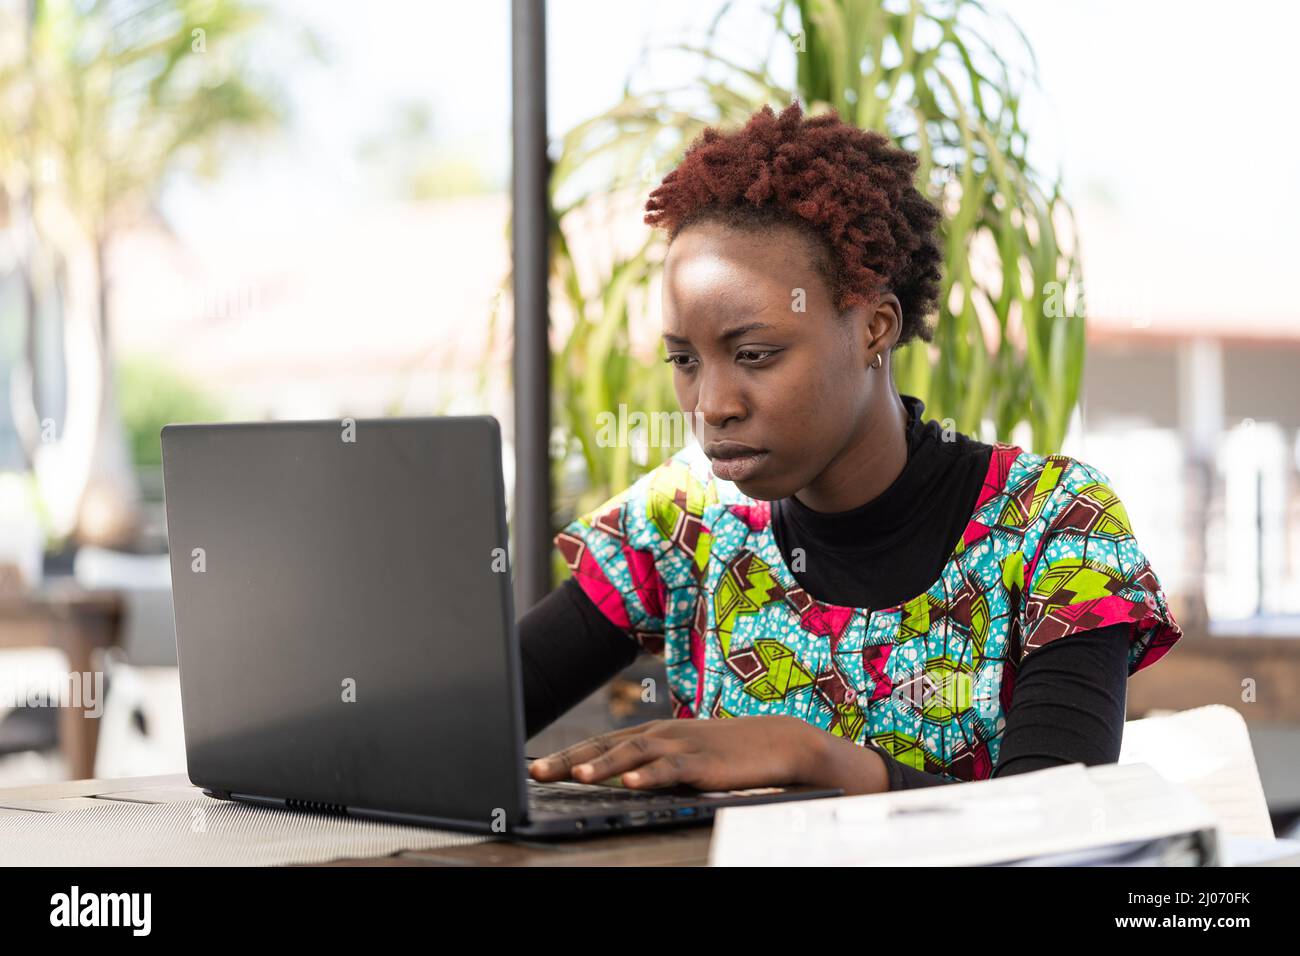 Seria giovane ragazza africana seduta al suo portatile e alla ricerca di un lavoro su internet; problema sociale della disoccupazione giovanile nei paesi in via di sviluppo Foto Stock